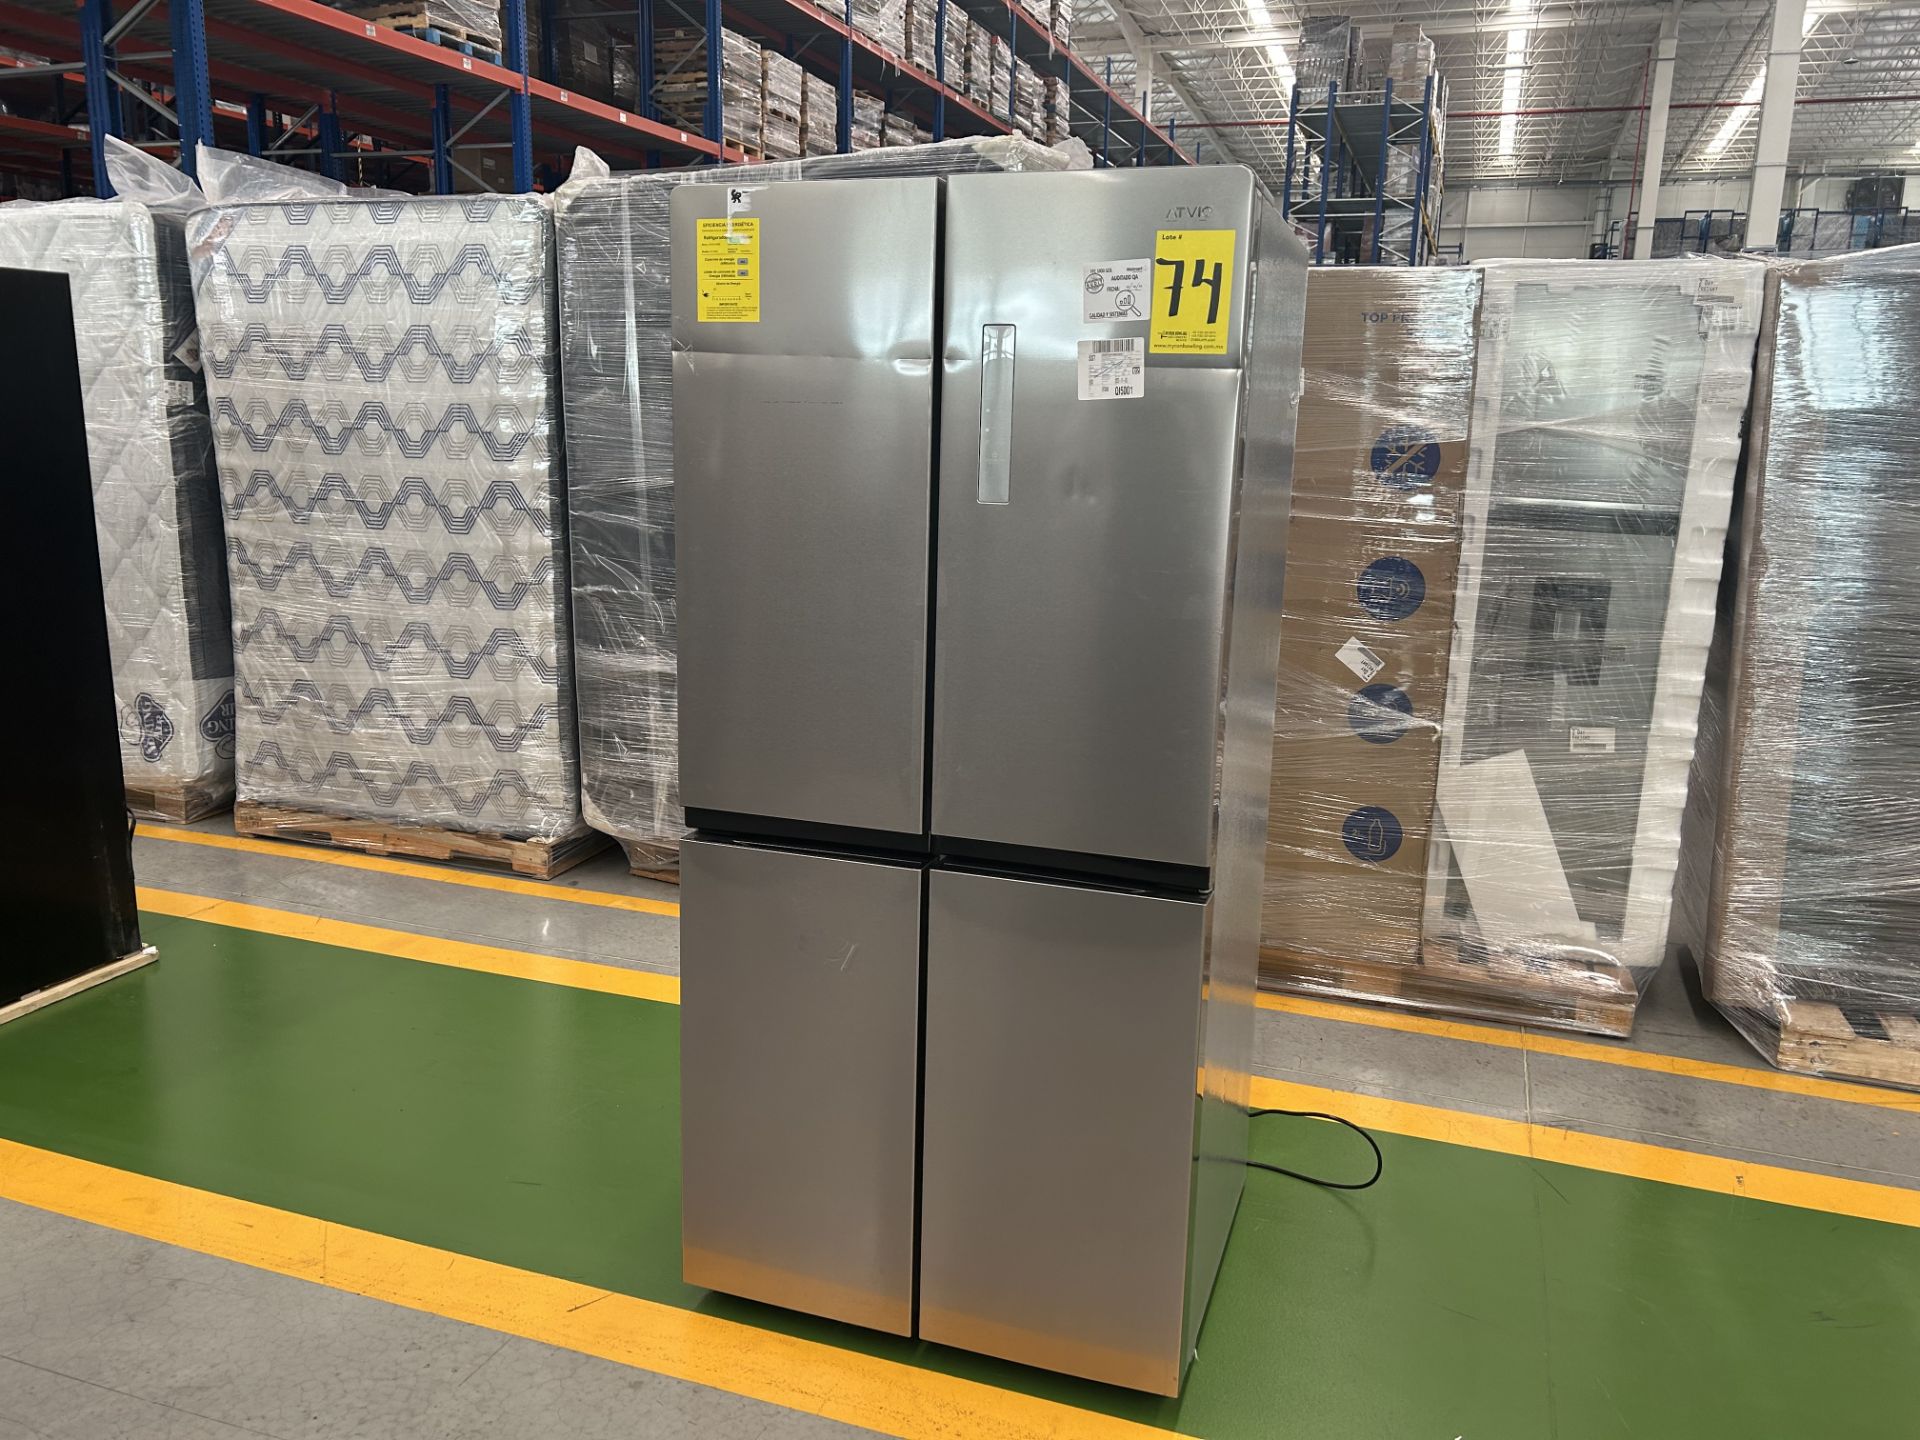 1 Refrigerador Marca ATVIO, Modelo AT17MD, Serie 160093, Color GRIS (No se Asegura su Funcionamient - Bild 2 aus 5